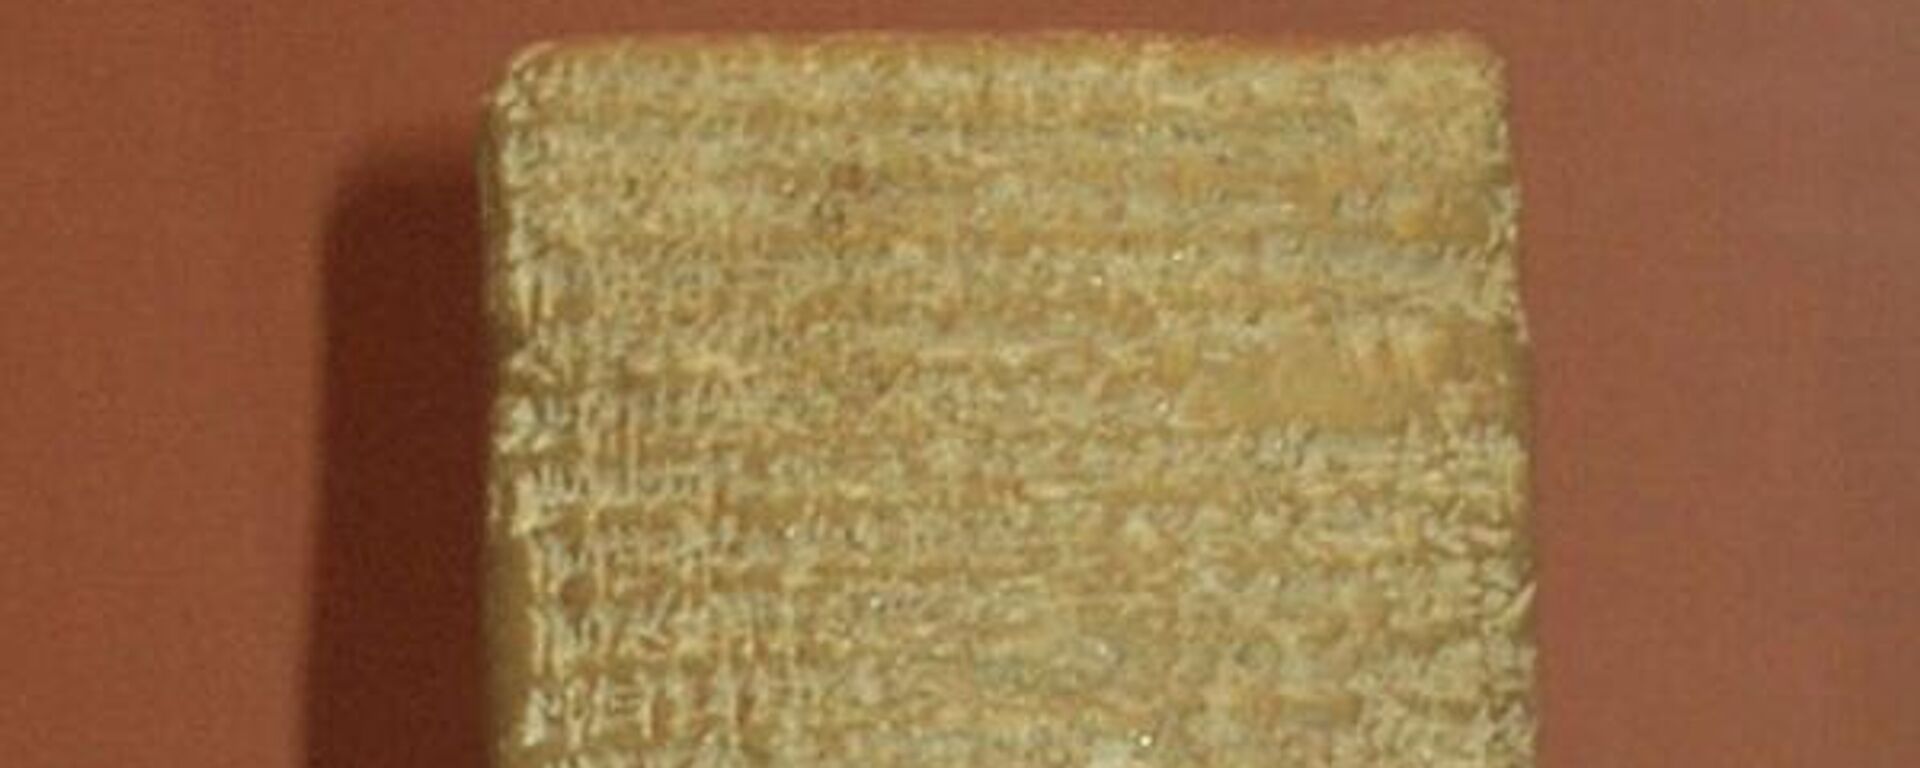 Pisma iz Amarne predstavljaju arhiv glinenih pločica ispisanih na akadskom jeziku. - Sputnik Srbija, 1920, 09.11.2022